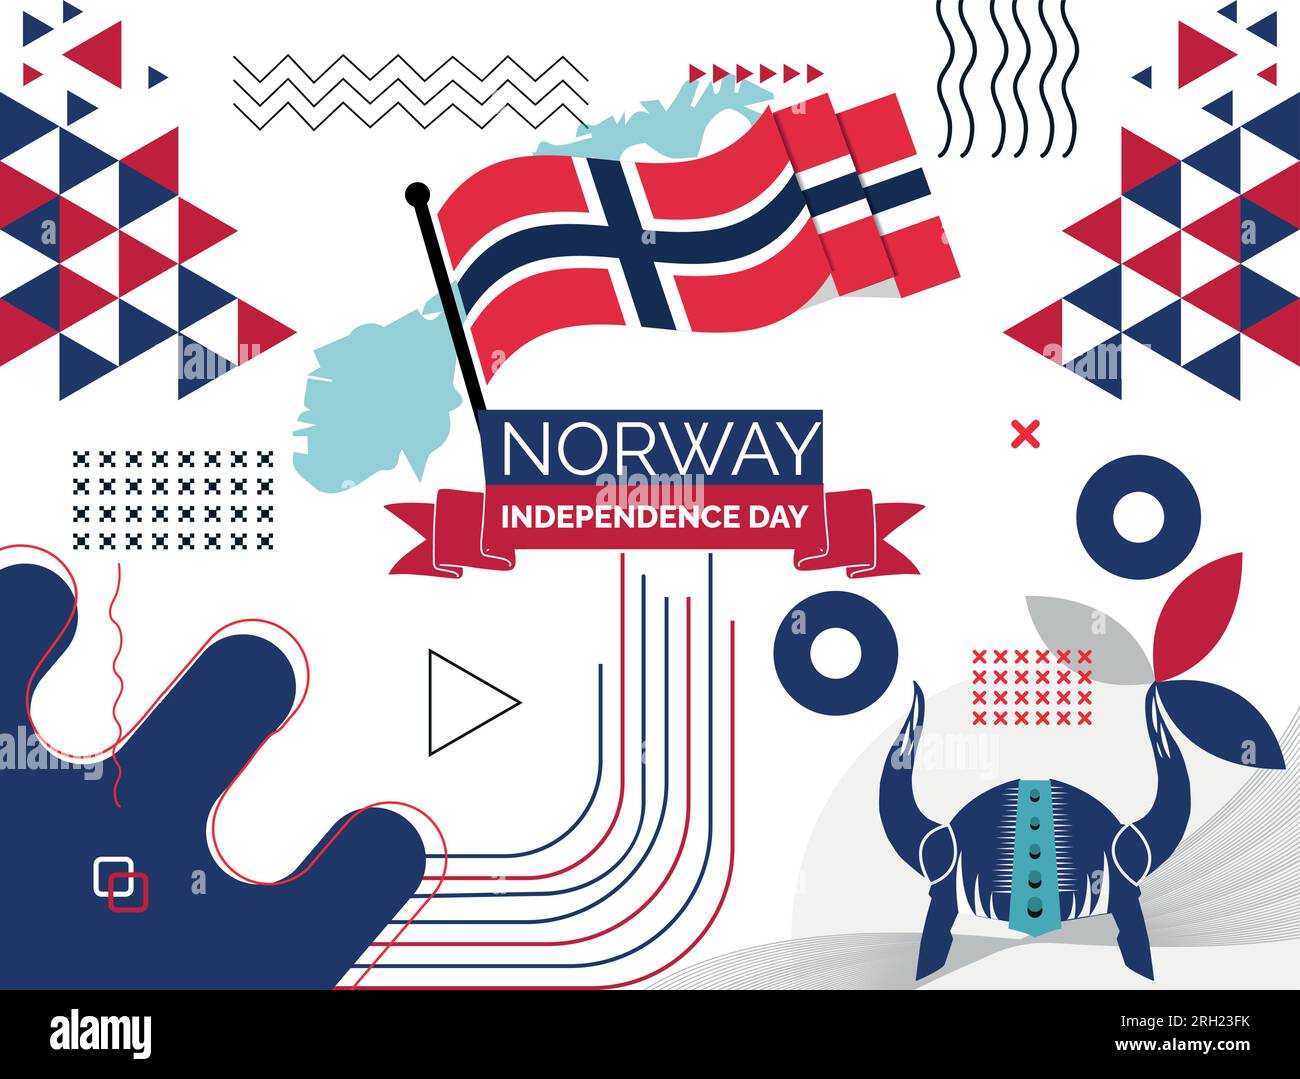 Norwegisches Bannerdesign für den Nationaltag. Norwegische Flagge und Kartenthema mit Oslo Wikingerhelm im Hintergrund. Modernes Design mit Vorlagenvektor und norwegischer Flagge. Stock Vektor